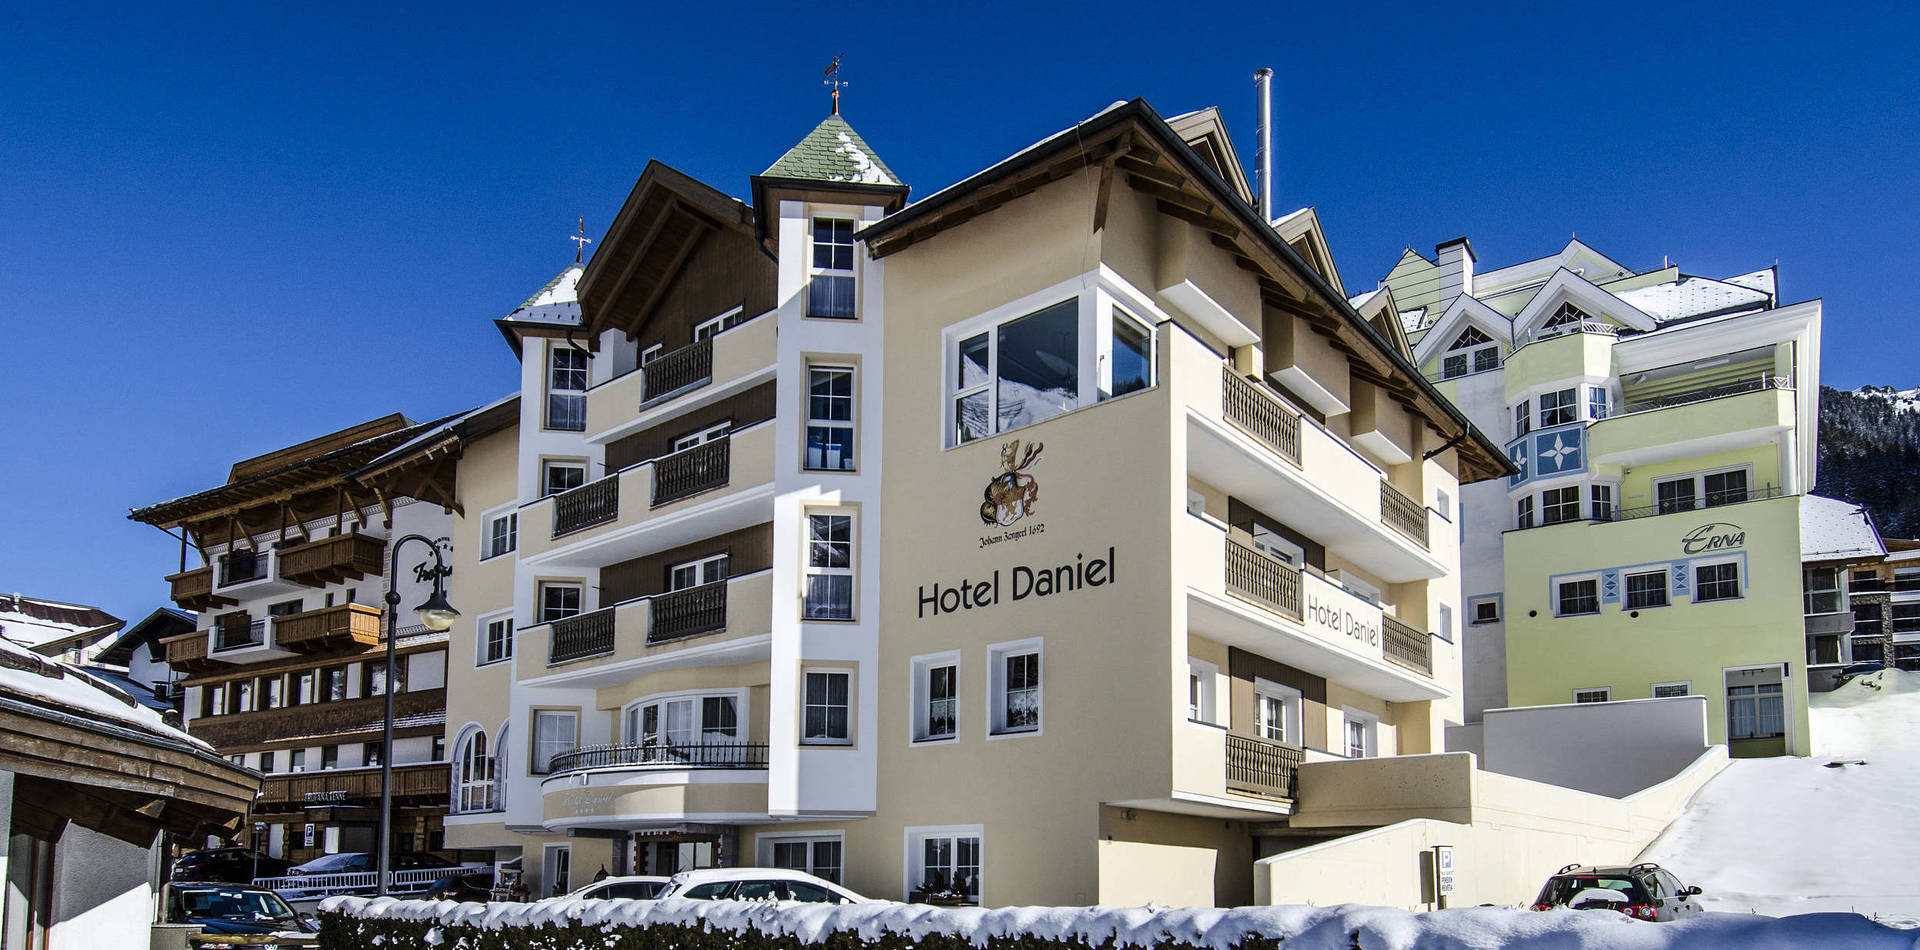  Hotel Daniel in Ischgl